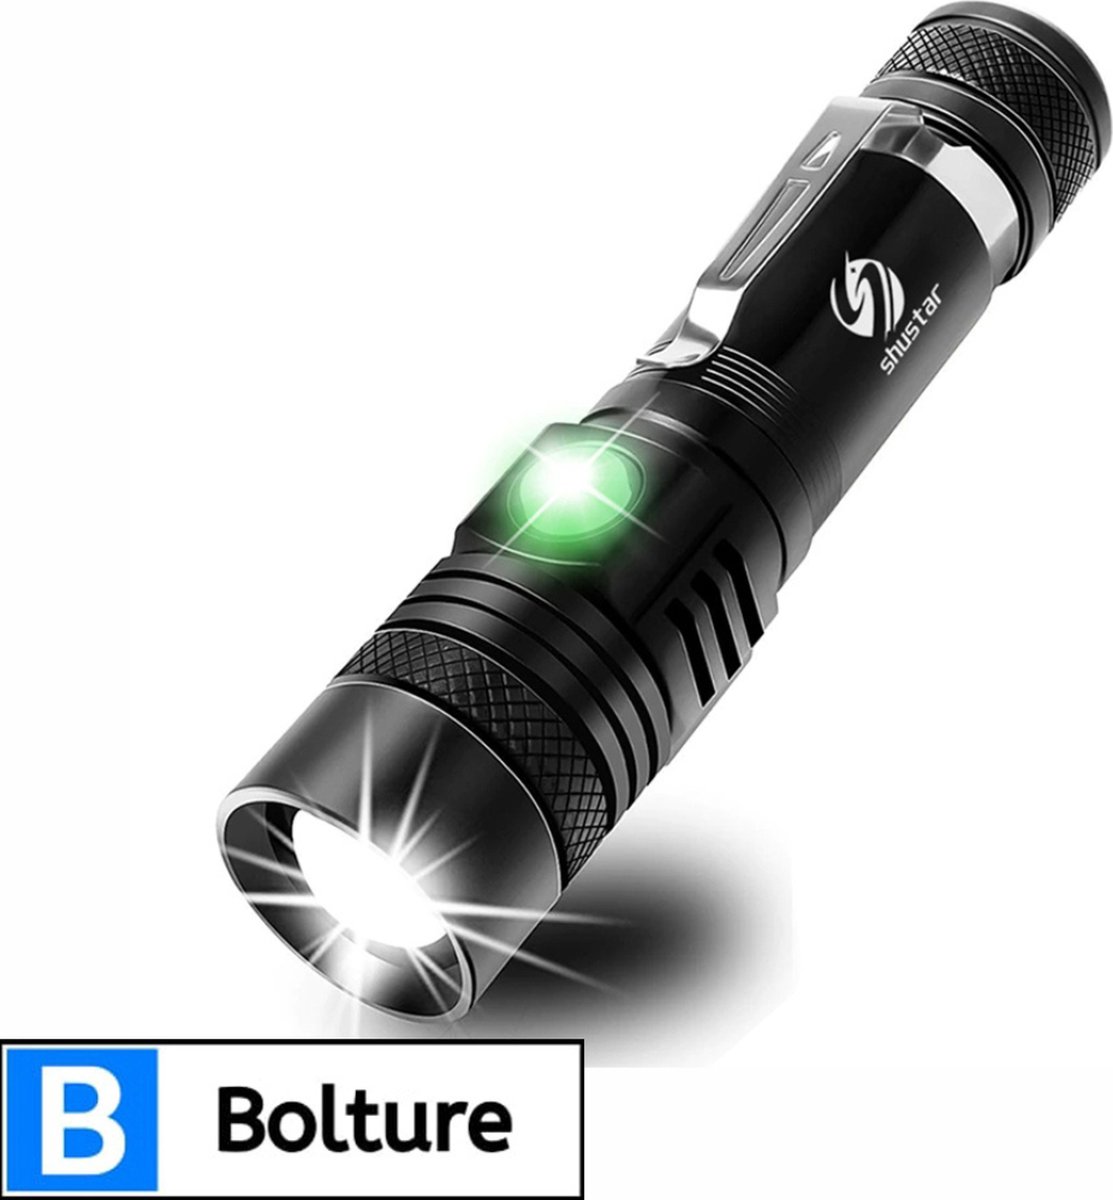 Bolture Zaklamp LED Oplaadbaar - USB Oplaadbare Zaklamp - Militaire Noodverlichting - Waterdicht - Inclusief Batterij - 1600 Lumen